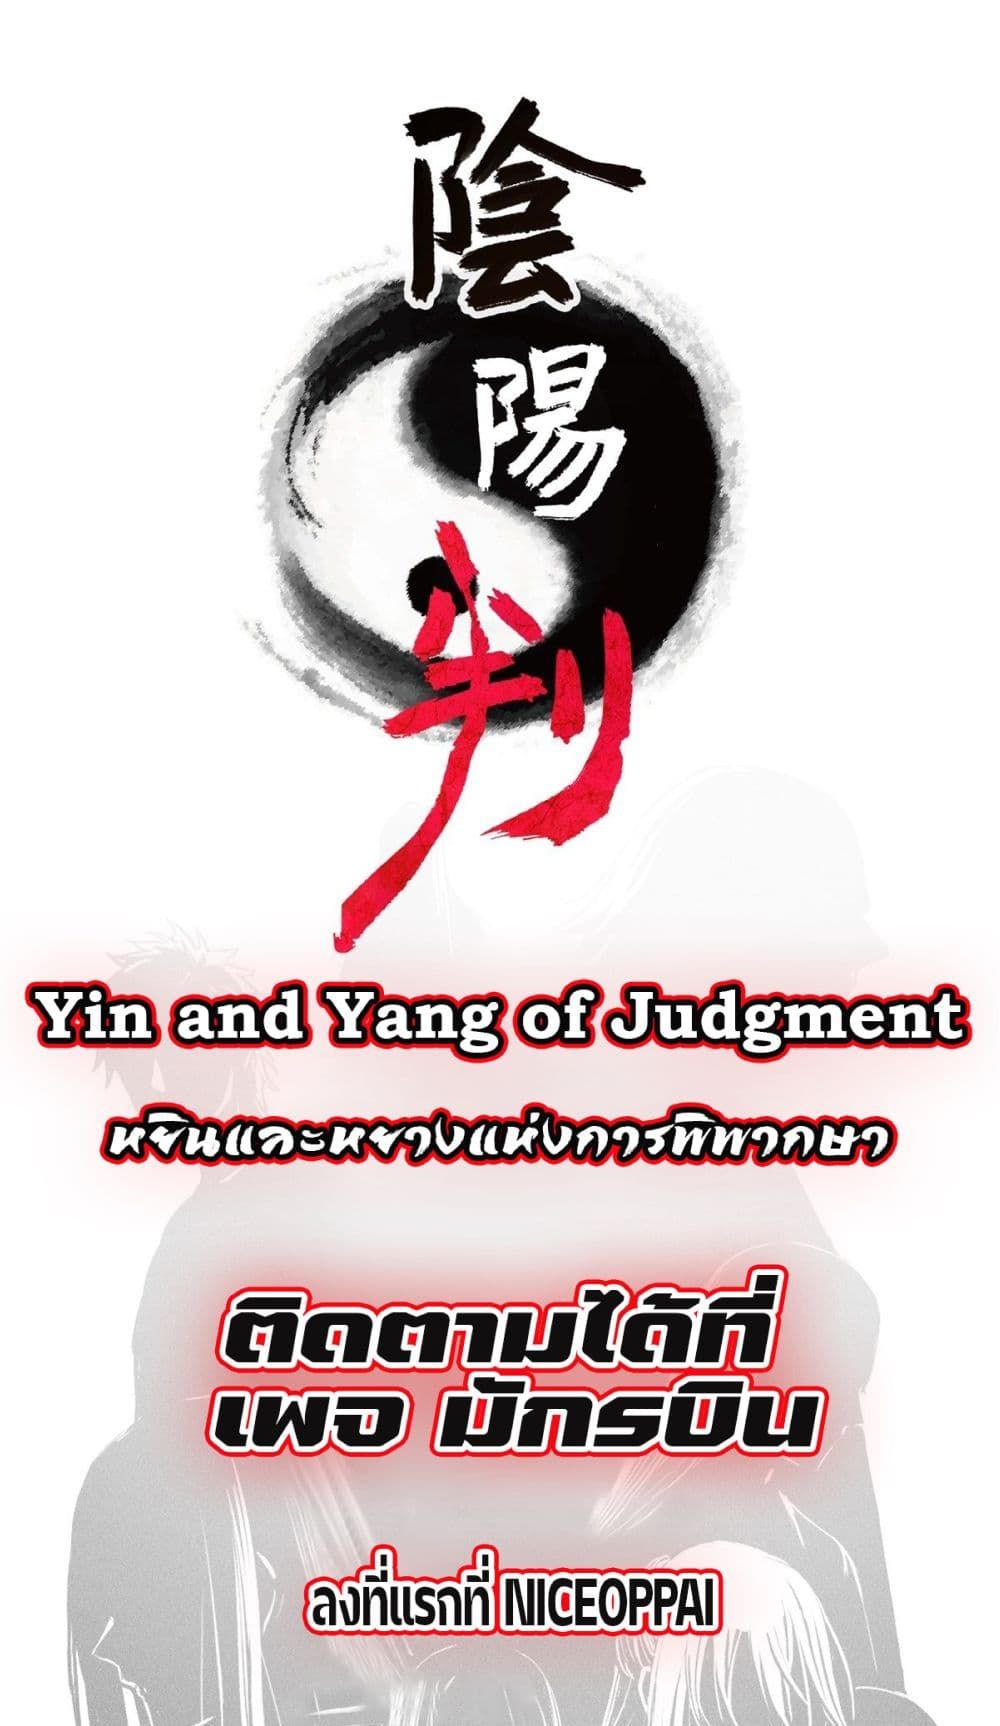 Yin and Yang Judgment 0-0